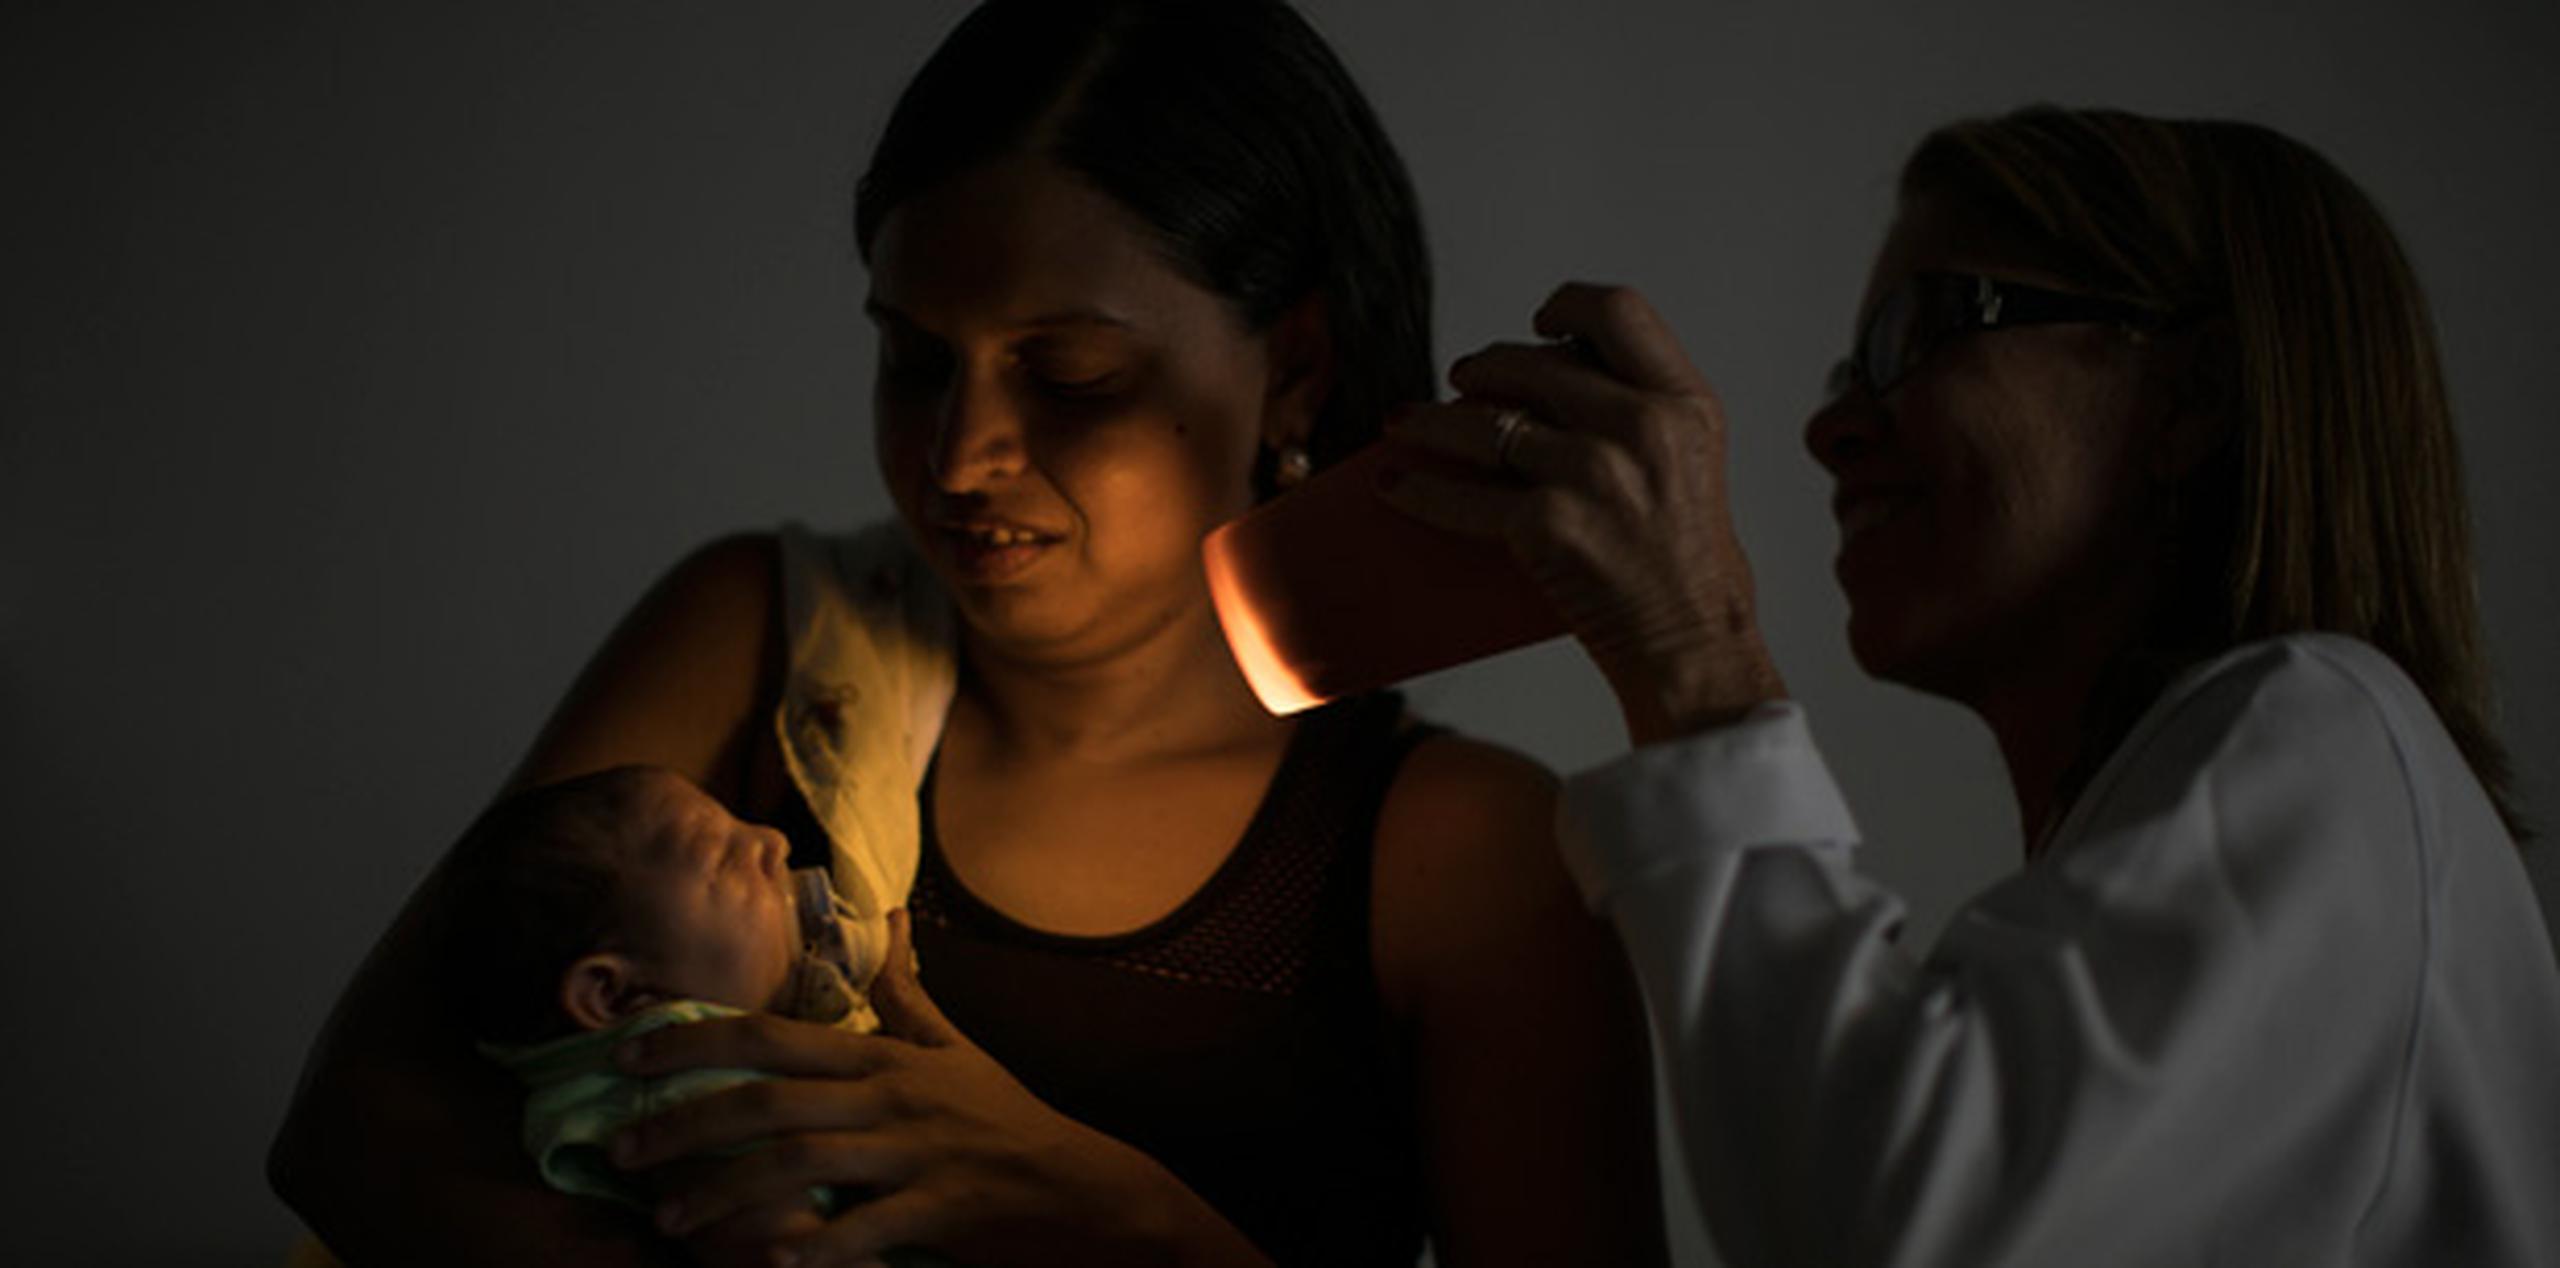 Daniele Ferreira dos Santos sostiene a su hijo Juan Pedro durante una prueba de visión. La mujer nunca fue diagnosticada con zika, pero ella culpa al virus por la malformación que padece su hijo y por las duras consecuencias que ello ha representado para su vida. (AP/Felipe Dana)
